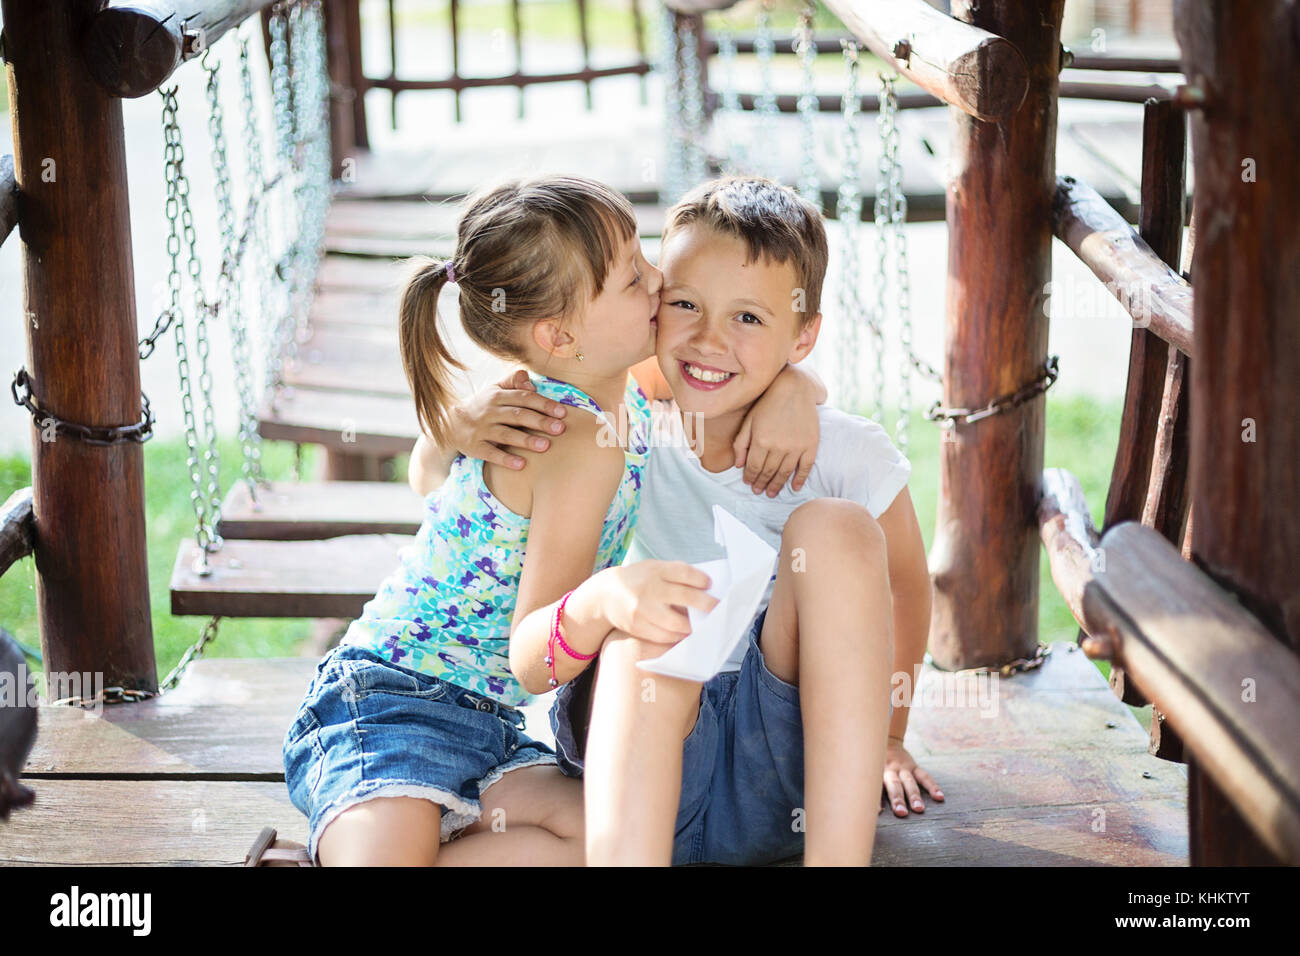 Due giovani caucasici abbracciando bambini e una ragazza sta baciando un ragazzo su una guancia. Essi sono seduti in una casa di legno in un parco giochi per bambini al giorno d'estate e di sole. Foto Stock